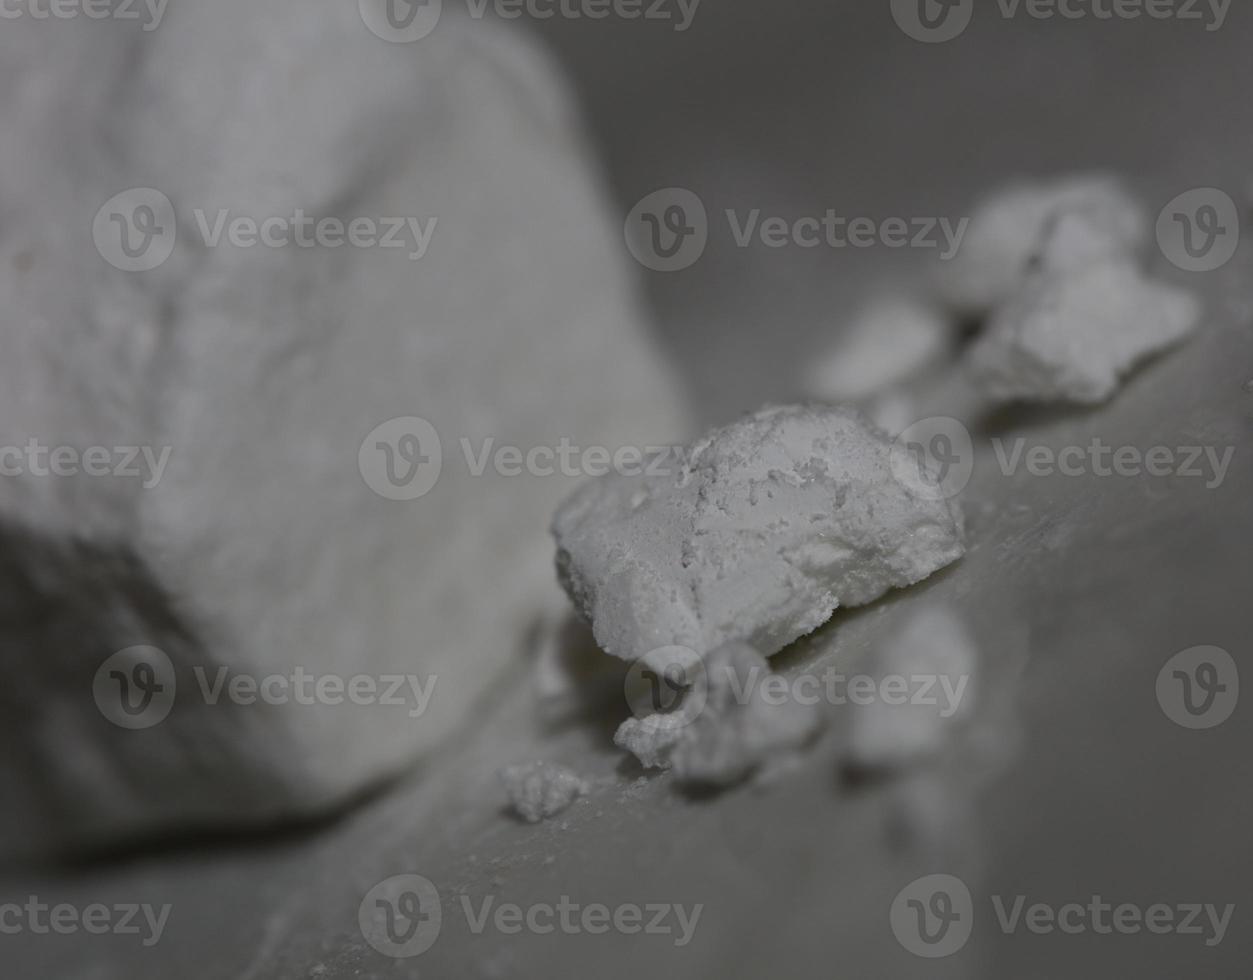 zuiver cocaïne rotsen dichtbij omhoog dope en verdovende middelen achtergrond hoog kwaliteit groot grootte ogenblik afdrukken onwettig stoffen voorraad fotografie foto